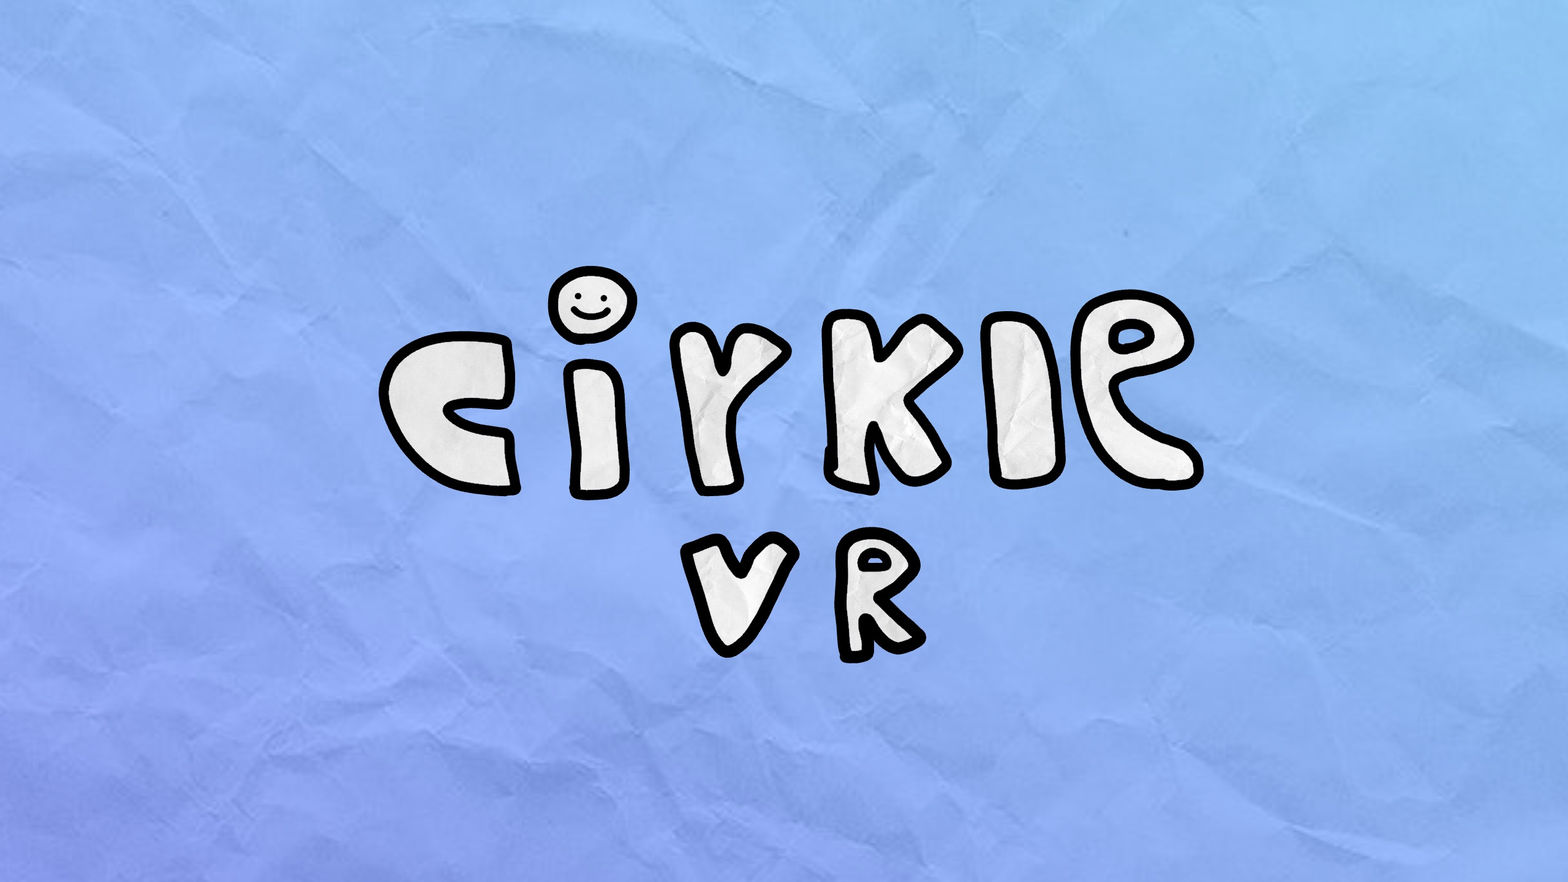 Cirkle VR